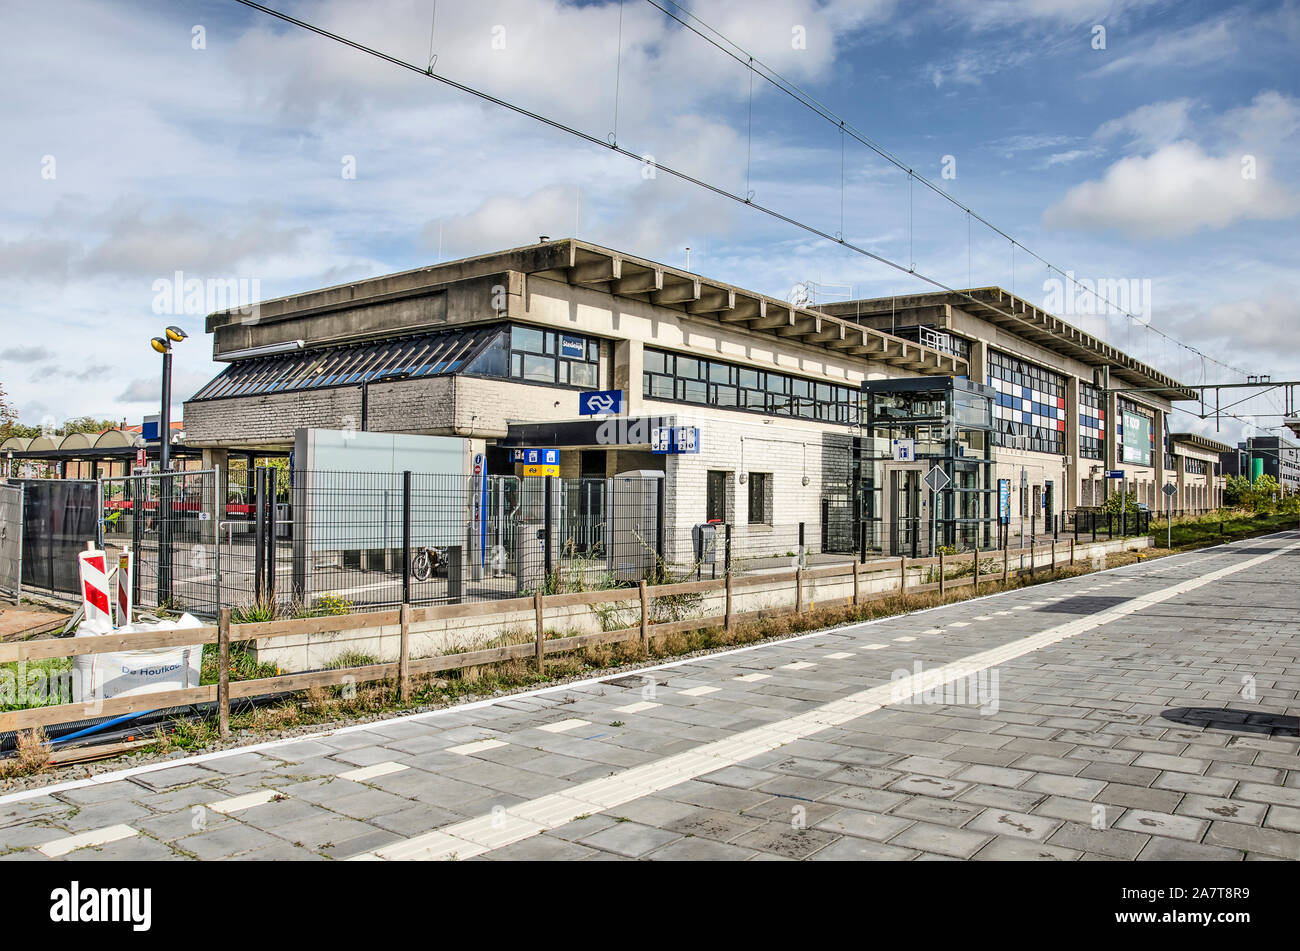 Va, les Pays-Bas, le 9 octobre 2019 : la vue de la plate-forme vers le bâtiment principal de la gare, pas largement considéré comme un brillant pi Banque D'Images